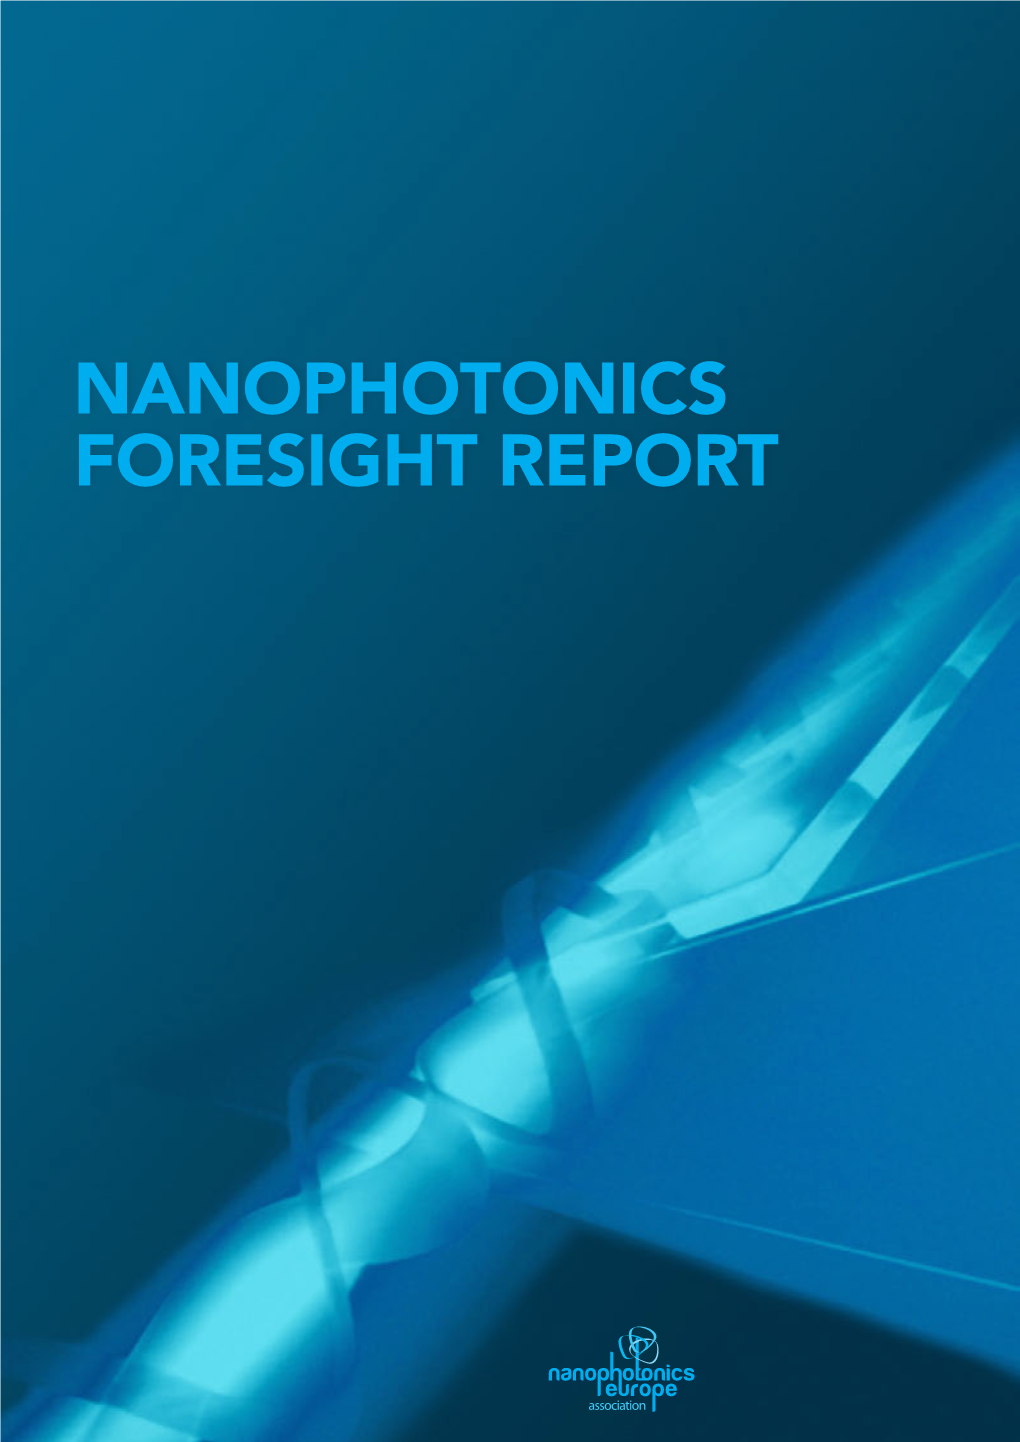 NANOPHOTONICS FORESIGHT REPORT 2 About